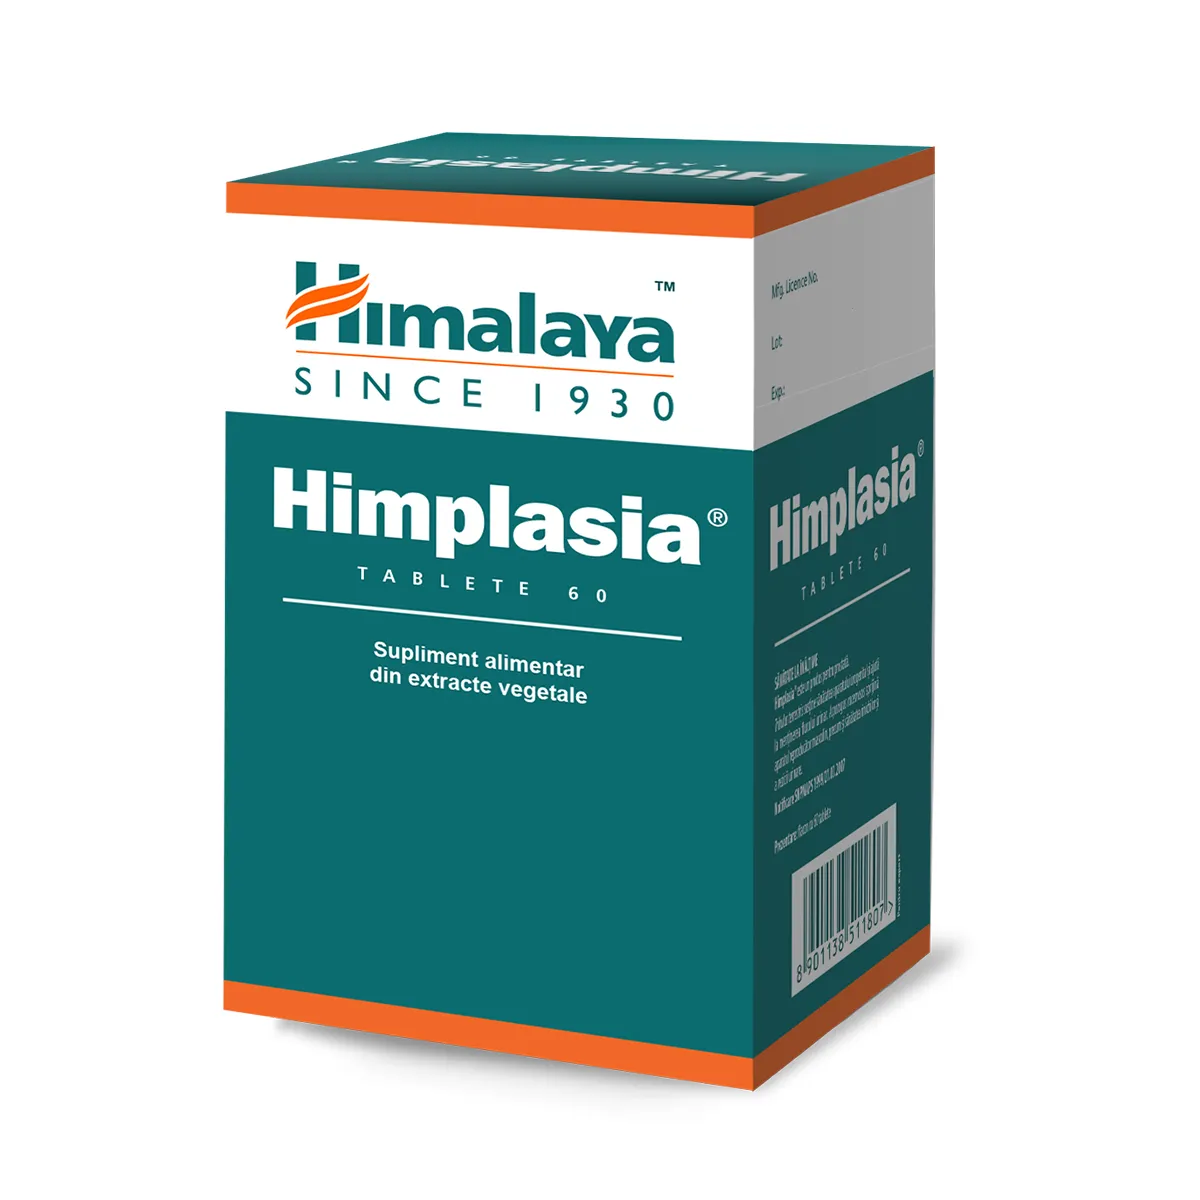 Himplasia x 60 tablete (Himalaya)